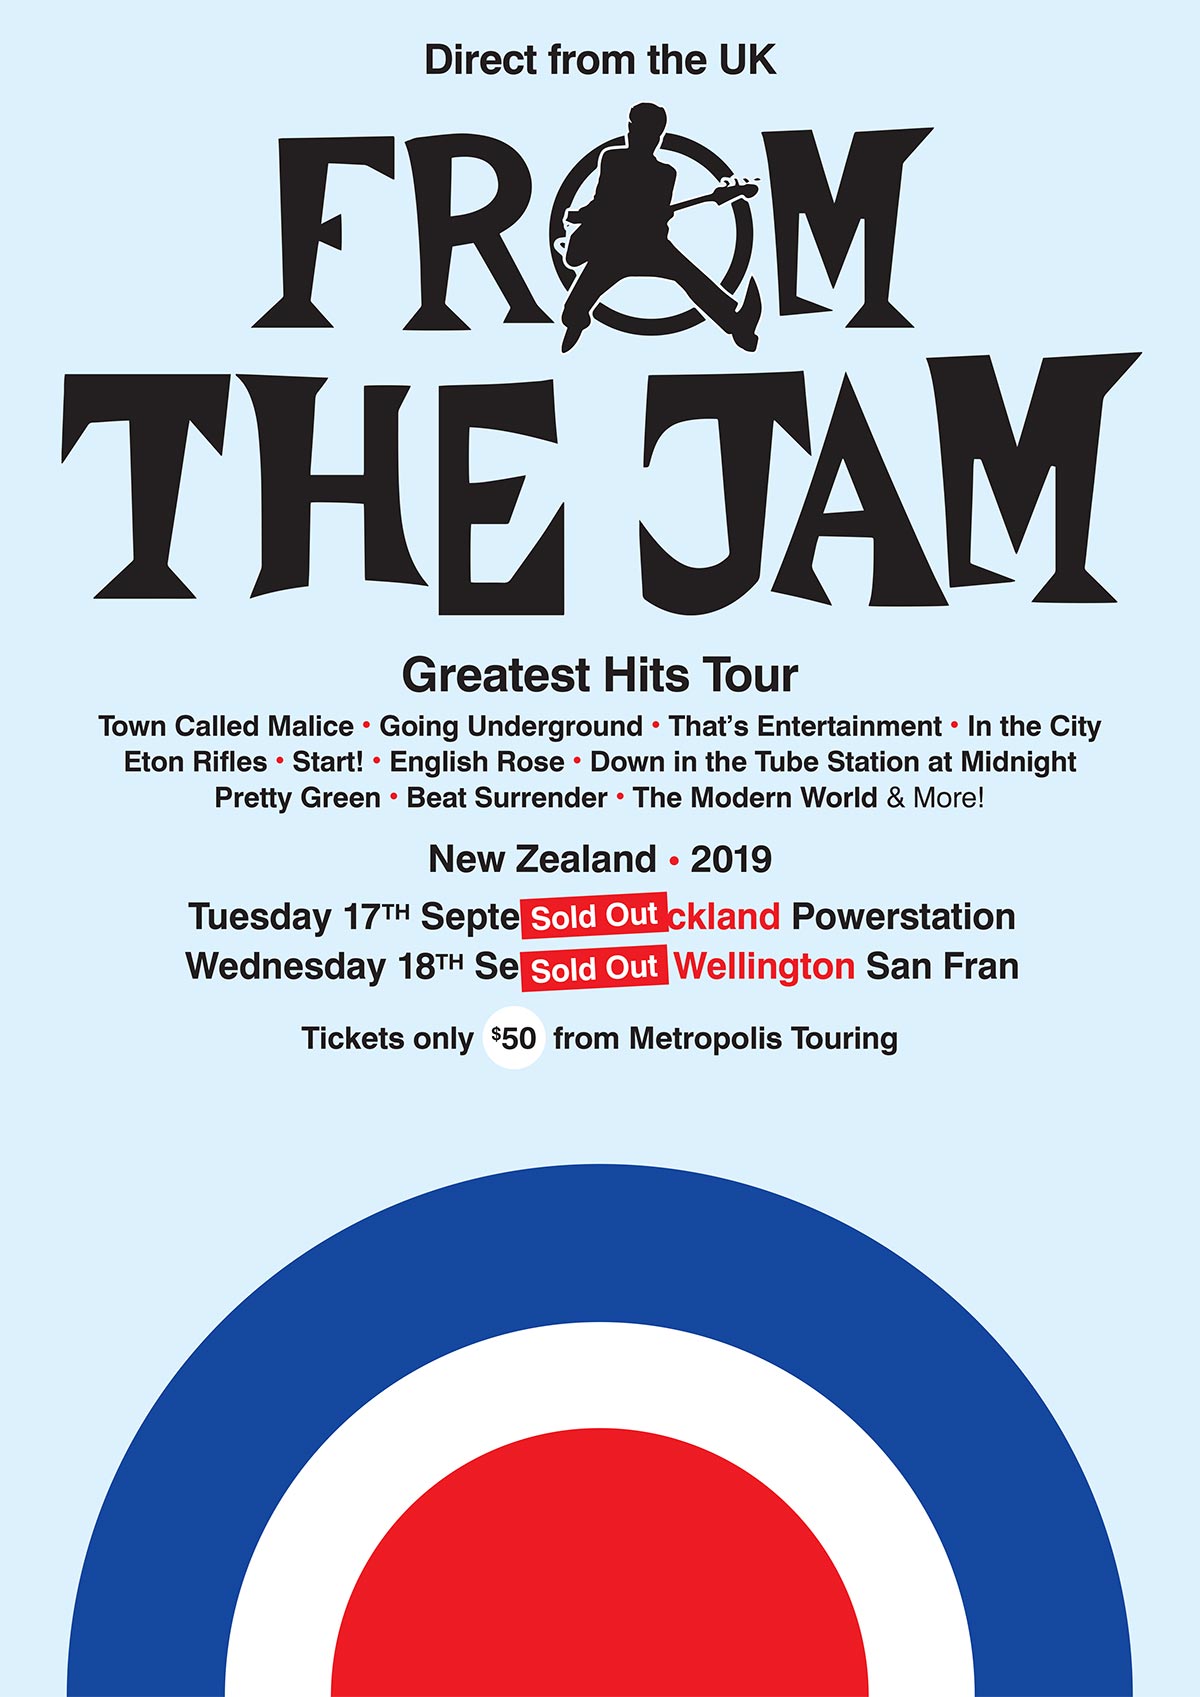 tour and jam